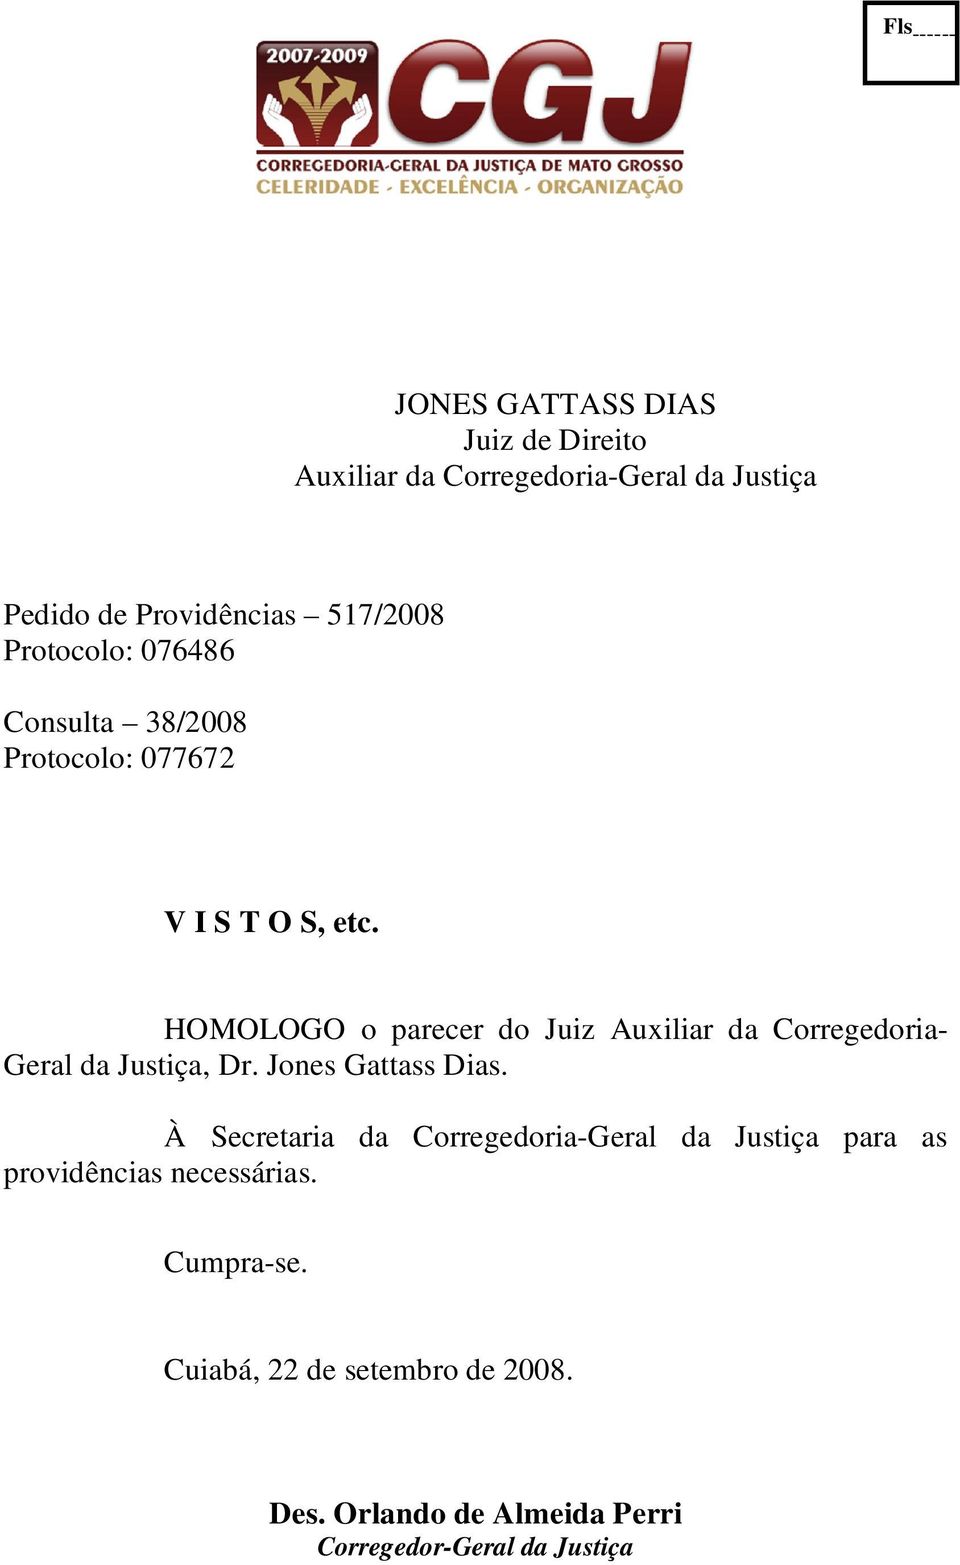 HOMOLOGO o parecer do Juiz Auxiliar da Corregedoria- Geral da Justiça, Dr. Jones Gattass Dias.